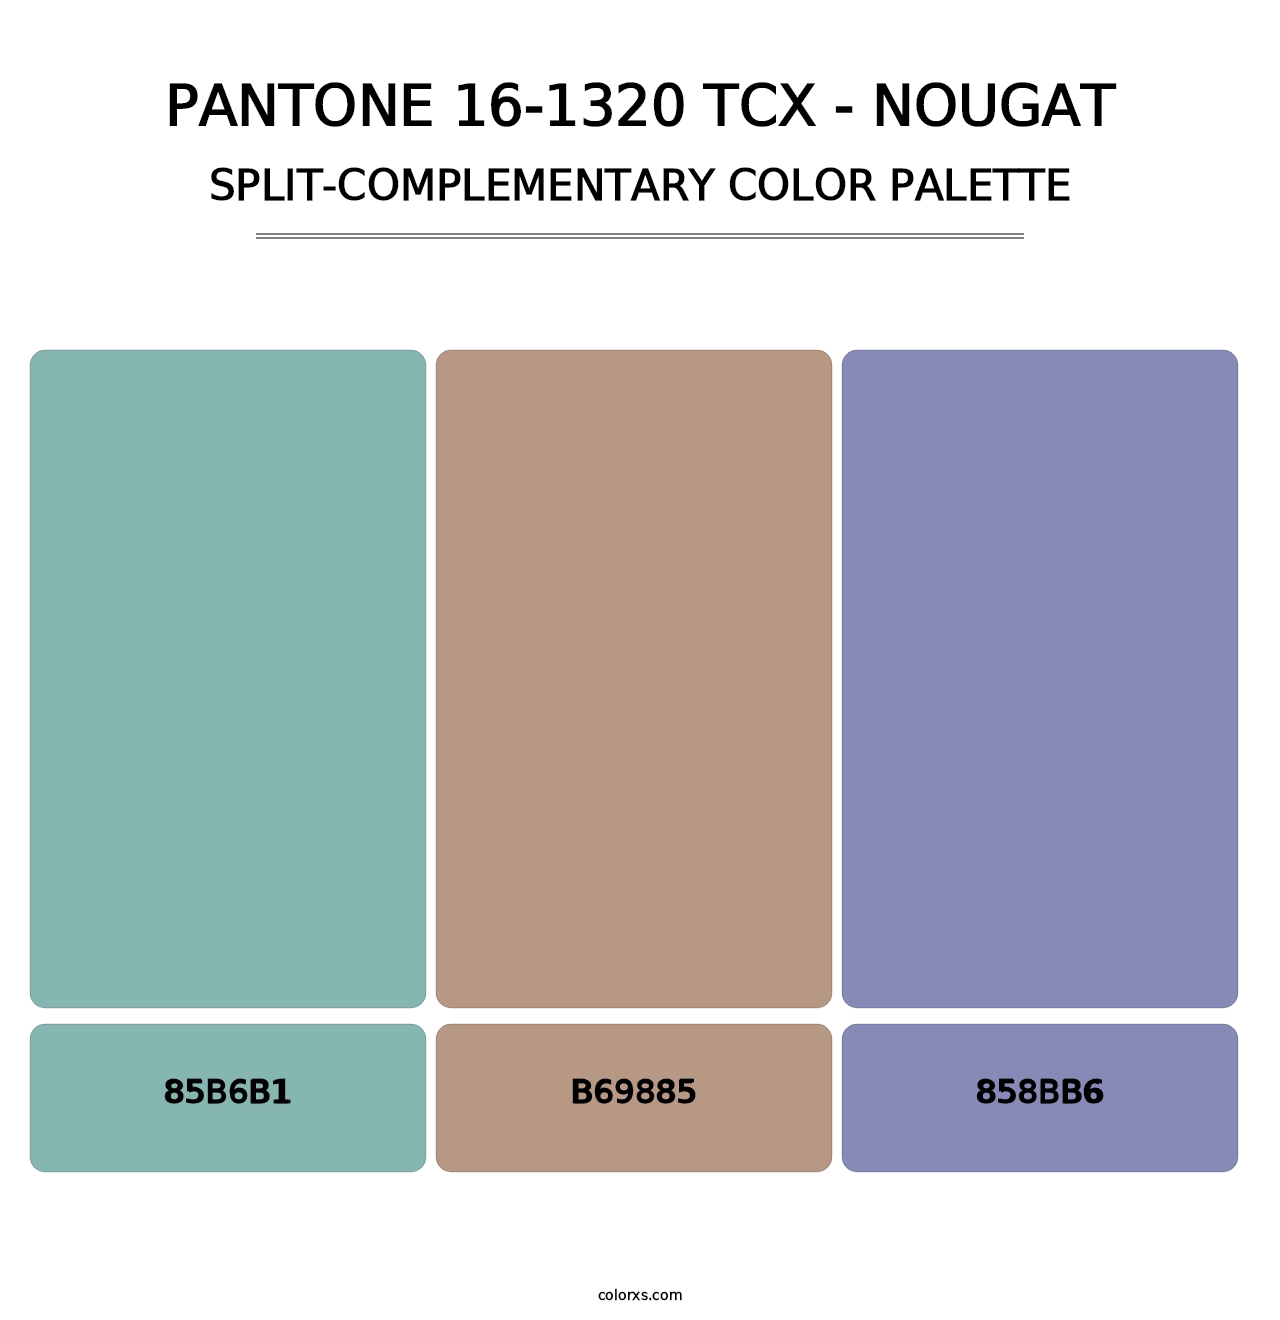 PANTONE 16-1320 TCX - Nougat - Split-Complementary Color Palette